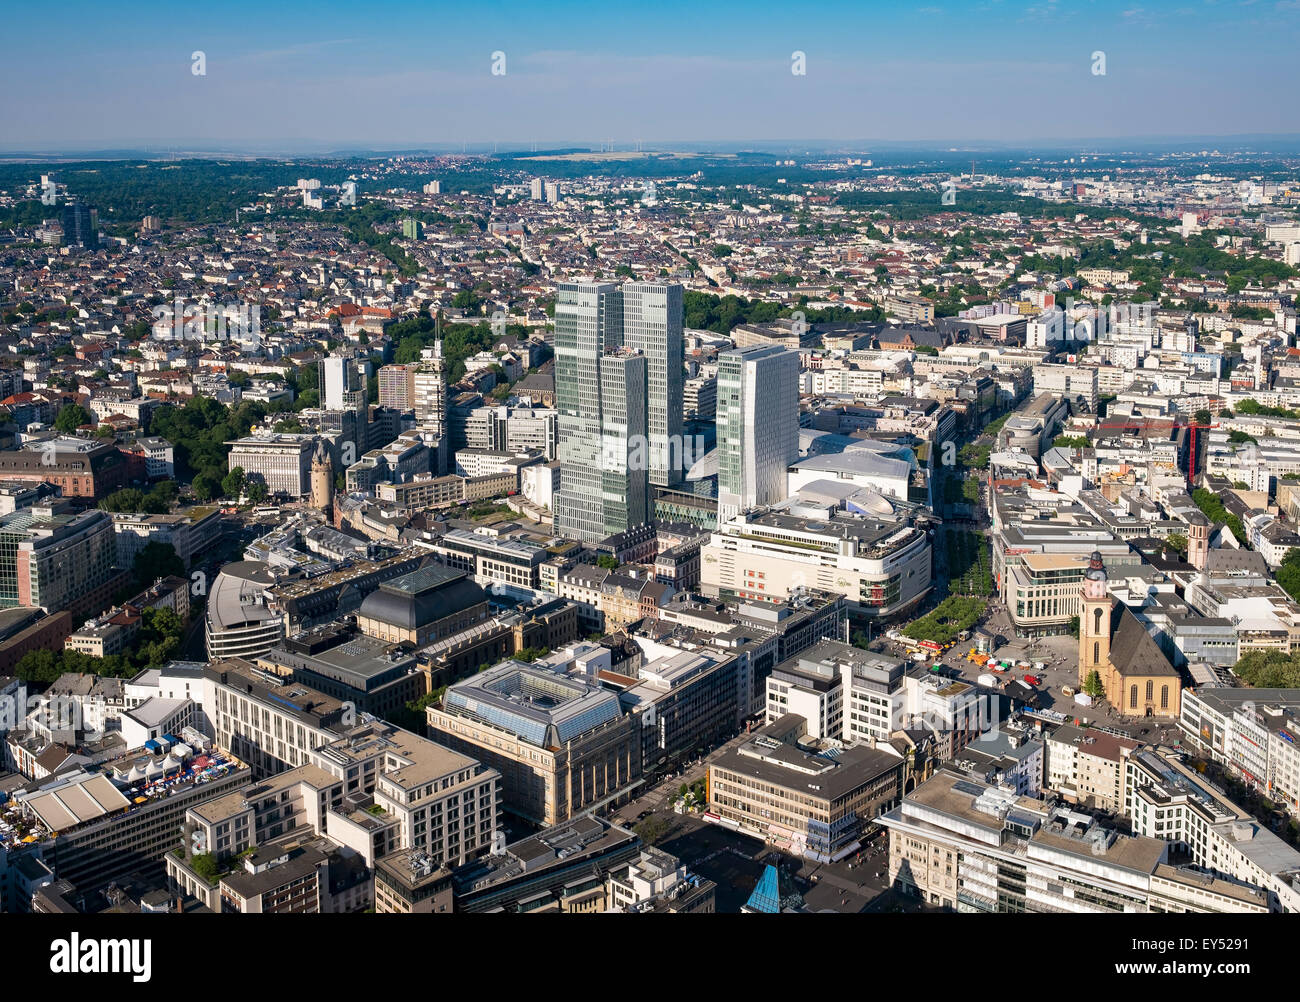 Palais Quartier e Zeil, Centro citta', vista dalla torre principale, Frankfurt am Main, Hesse, Germania Foto Stock